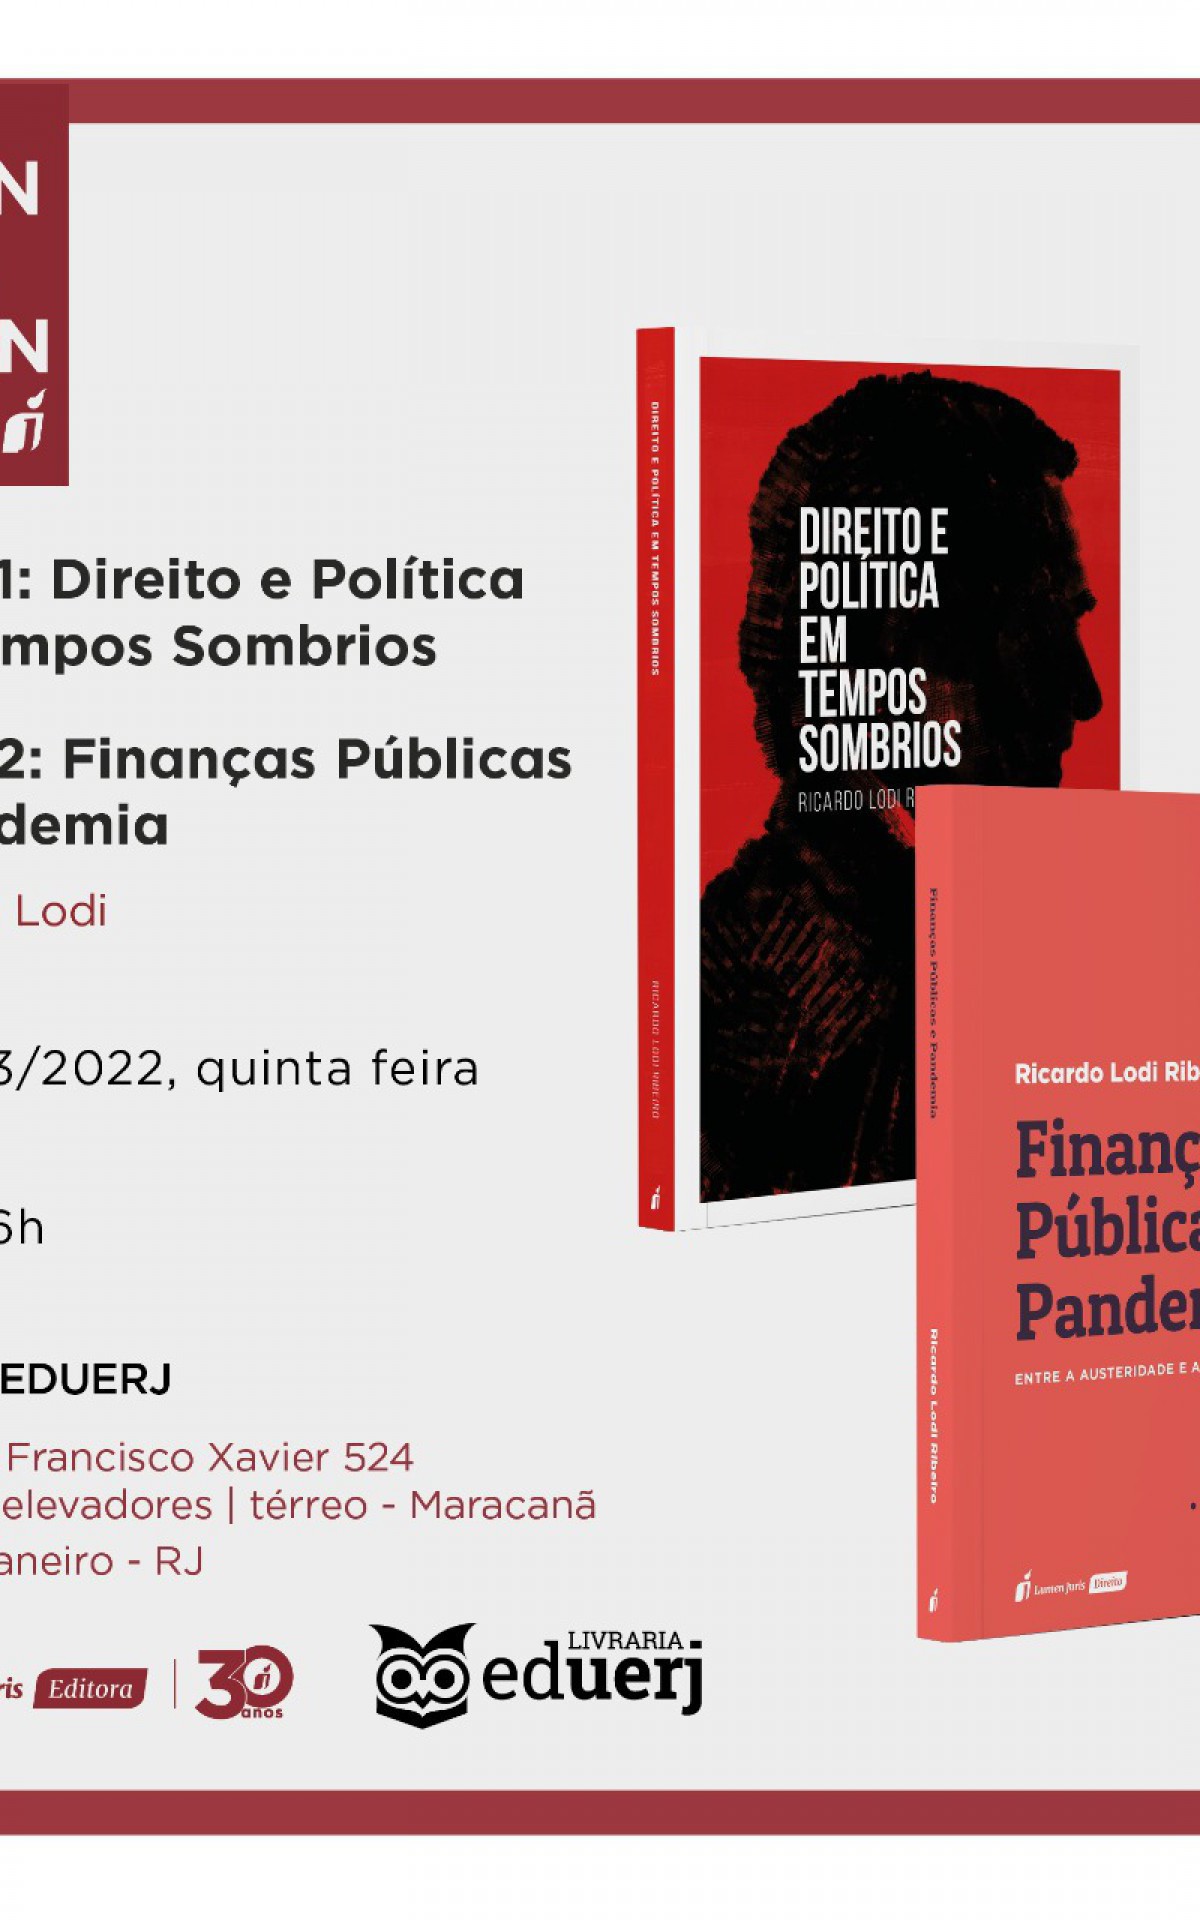 Reitor da Uerj, que advogou no impeachment de Dilma, lança obras sobre política - Divulgação